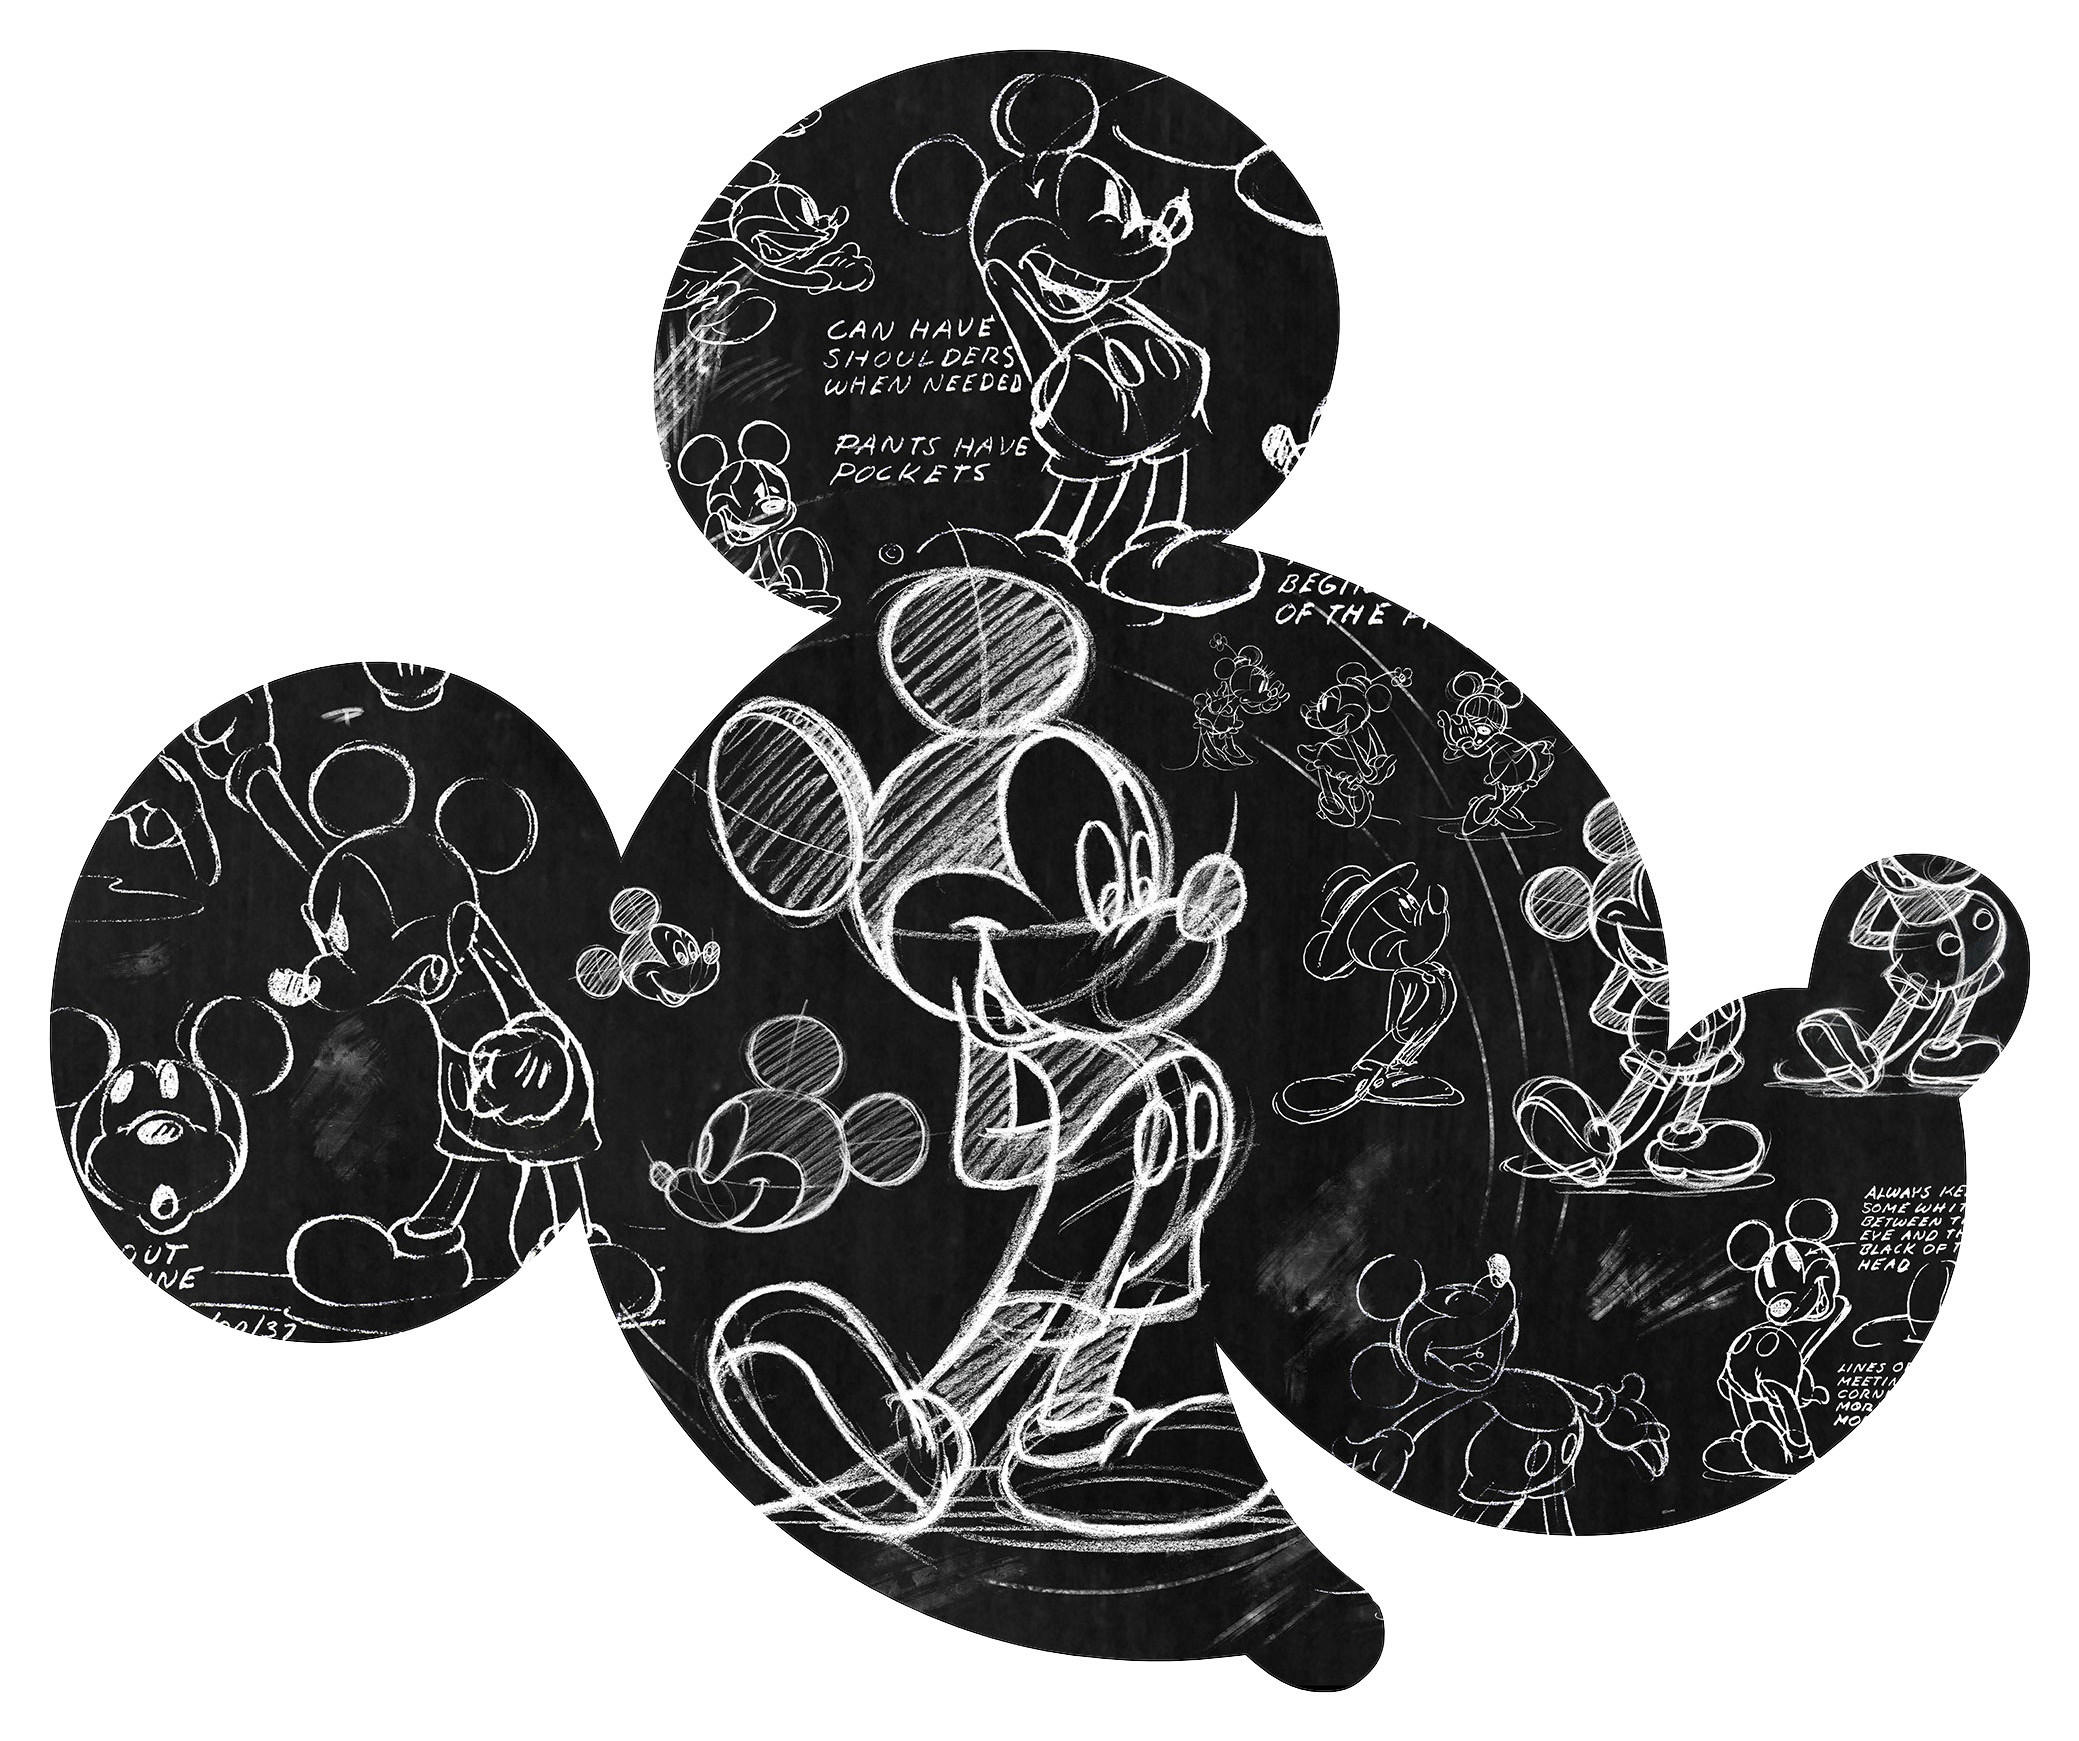 Vliestapete (selbstklebend) Mickey-Mouse-Design